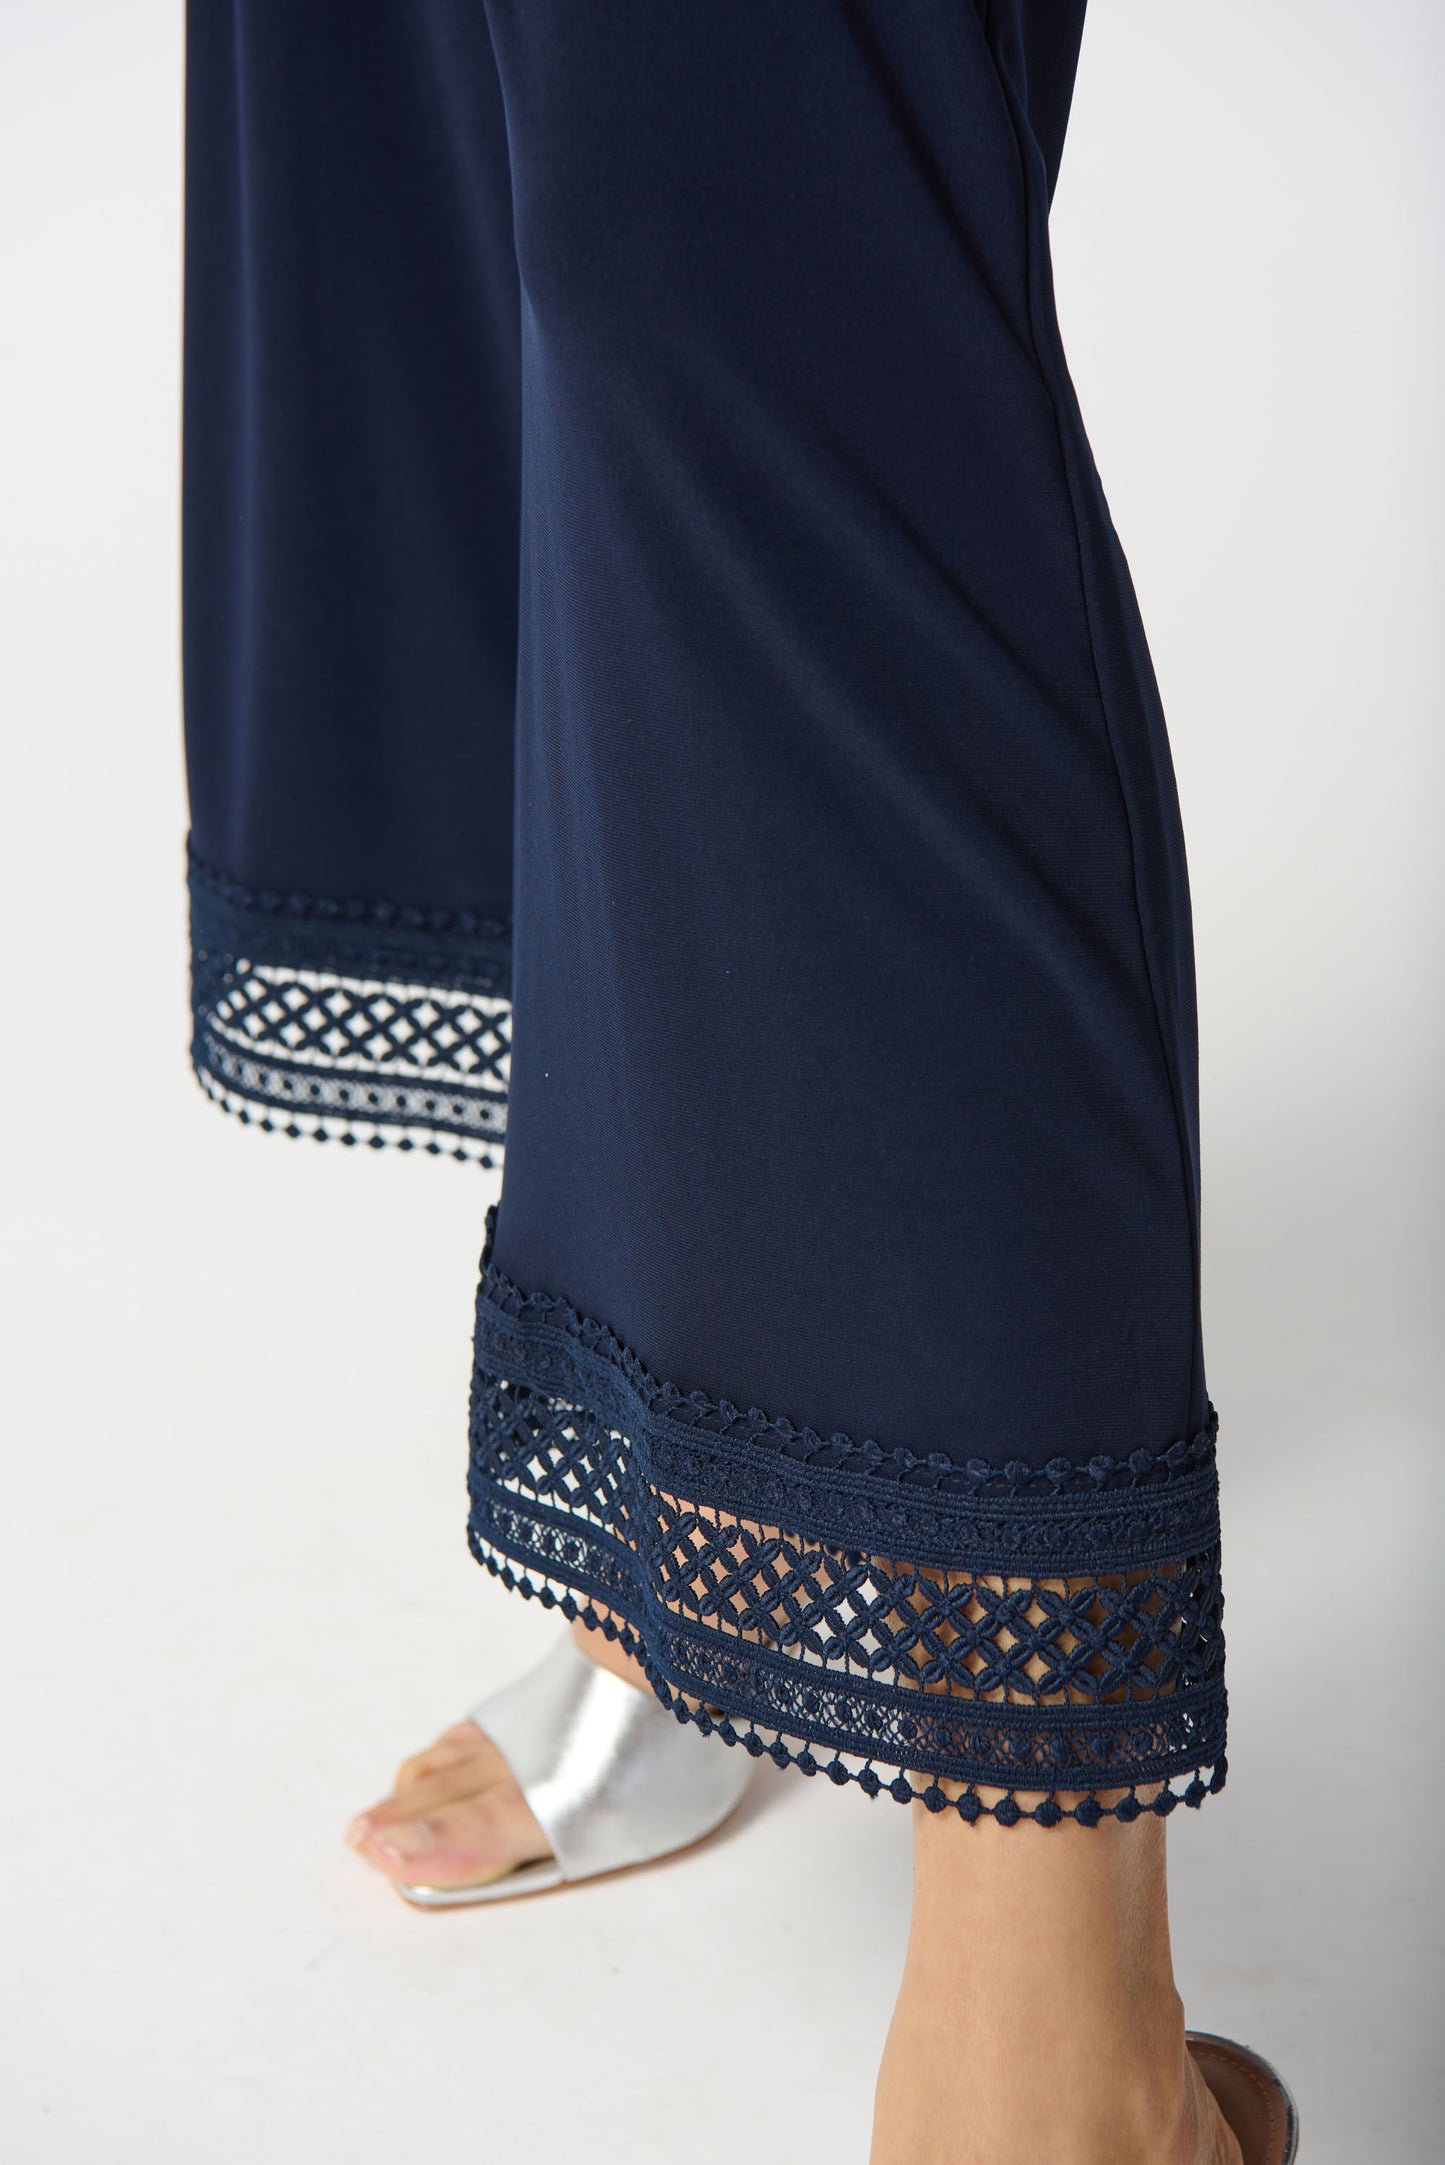 Pantalón culotte con guipur azul marino 242134